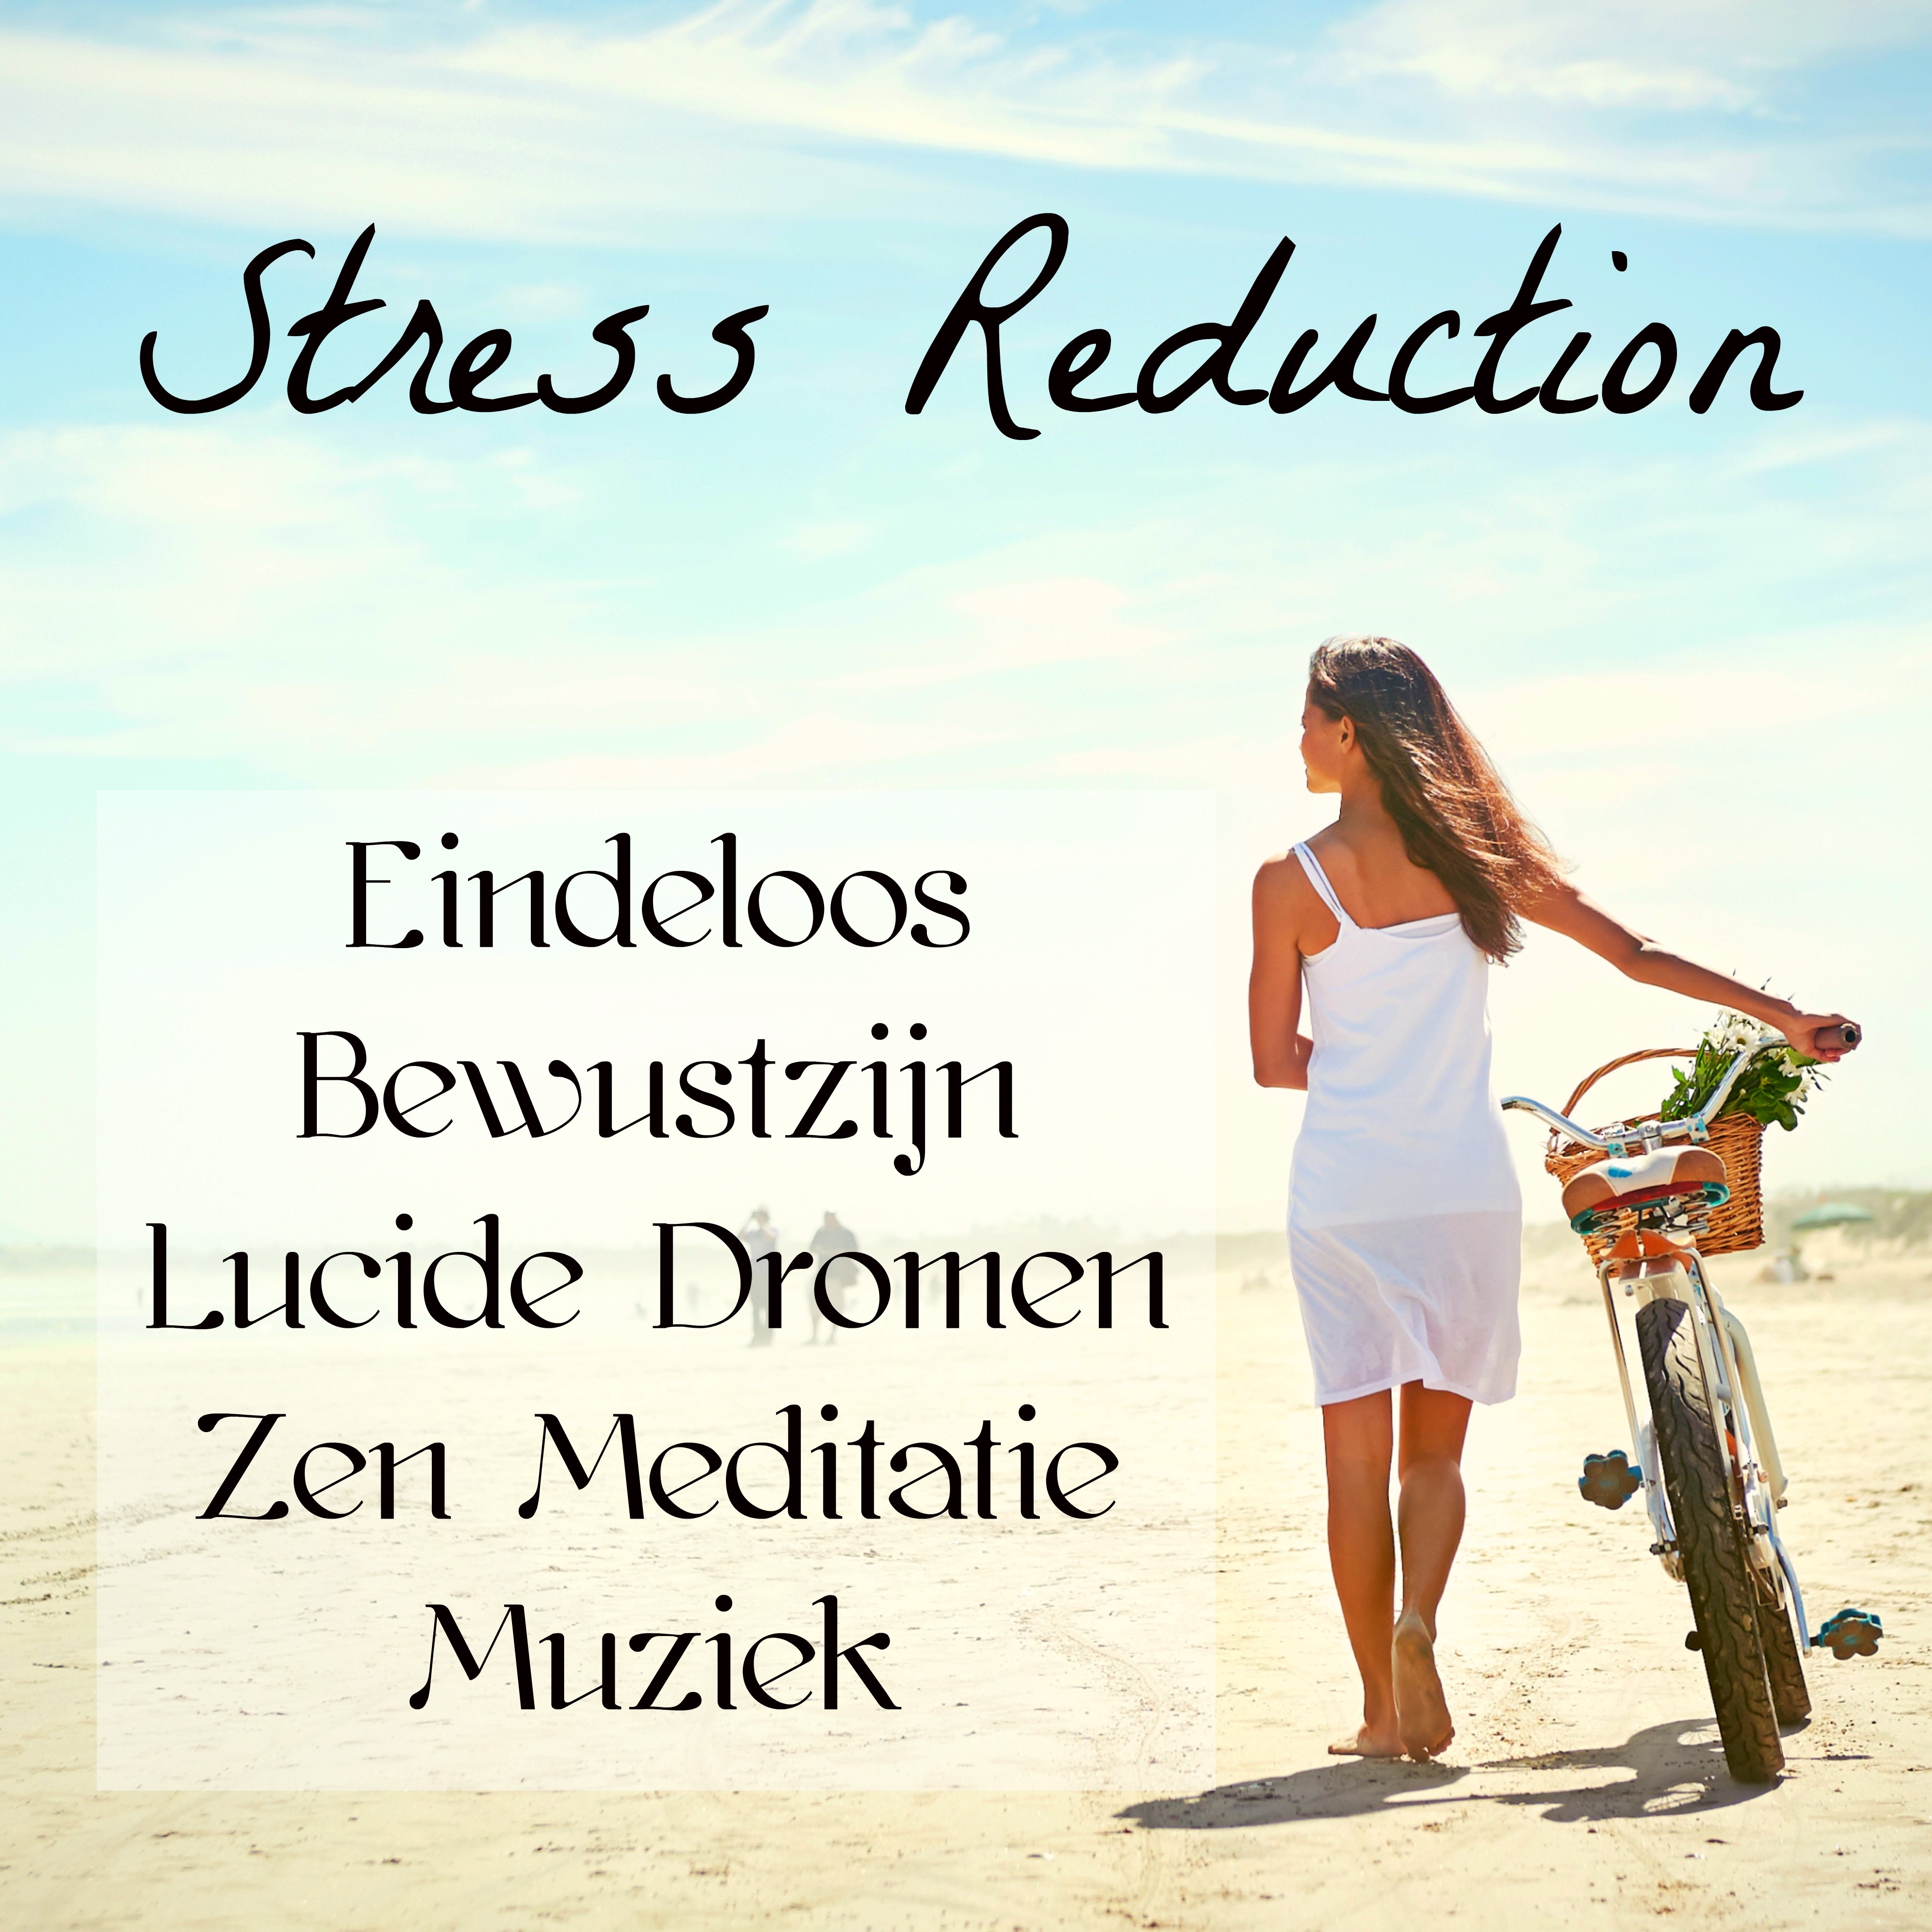 Stress Reduction - Eindeloos Bewustzijn Lucide Dromen Zen Meditatie Muziek voor Klanktherapie Reiki Heling Sereniteit